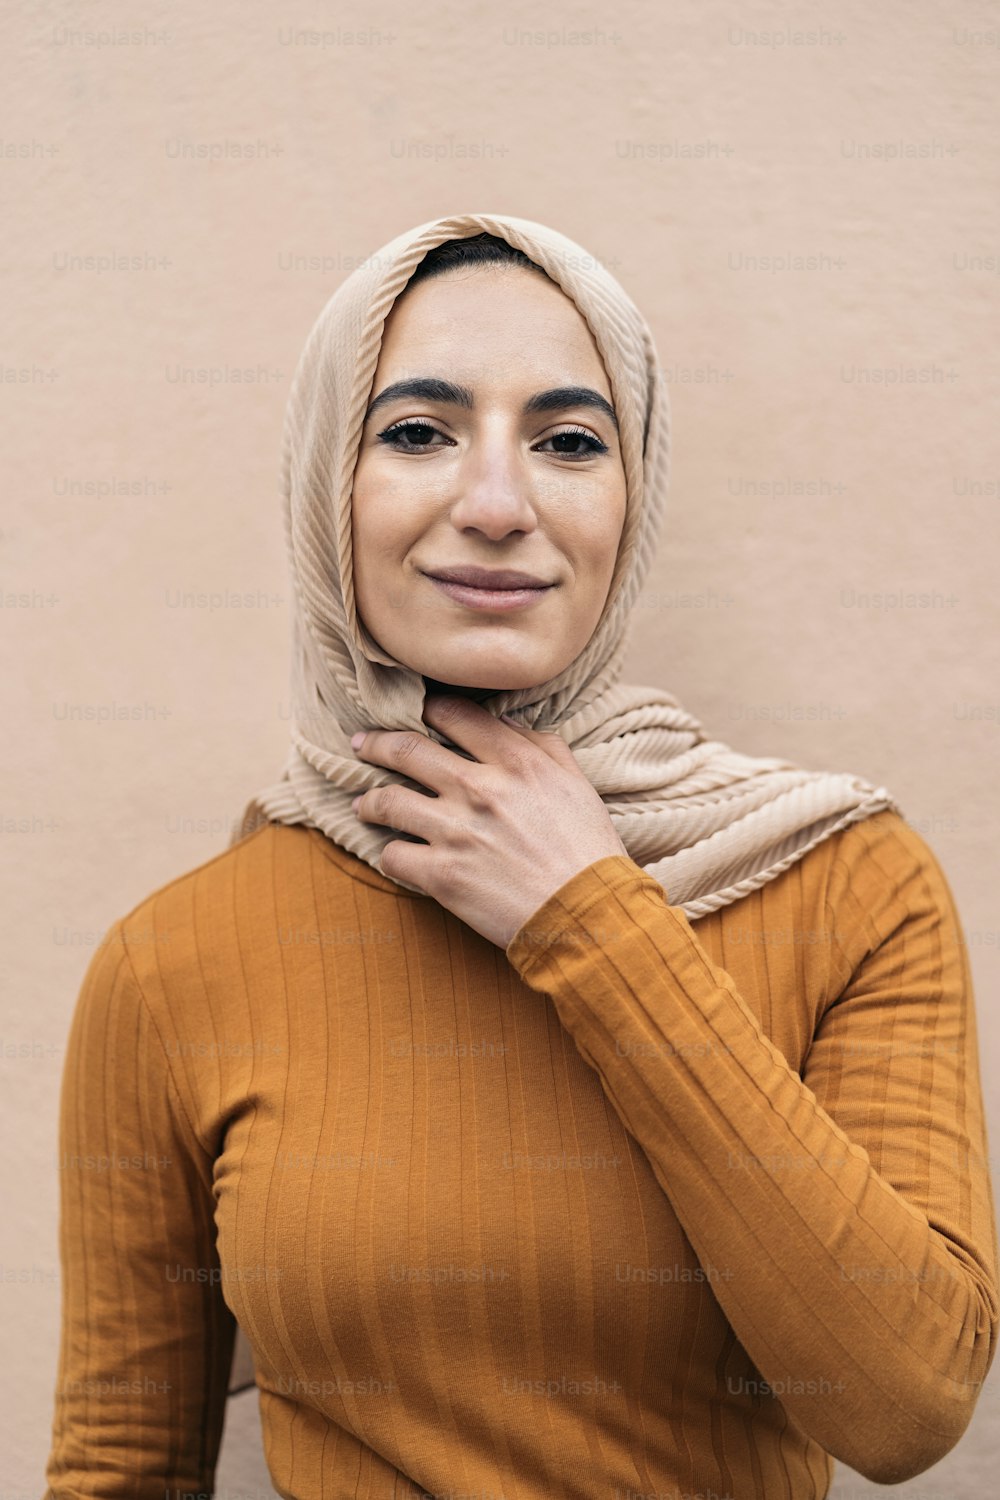 분홍색 머리 스카프를 두르고 웃으며 카메라를 바라보는 행복한 젊은 무슬림 여성.